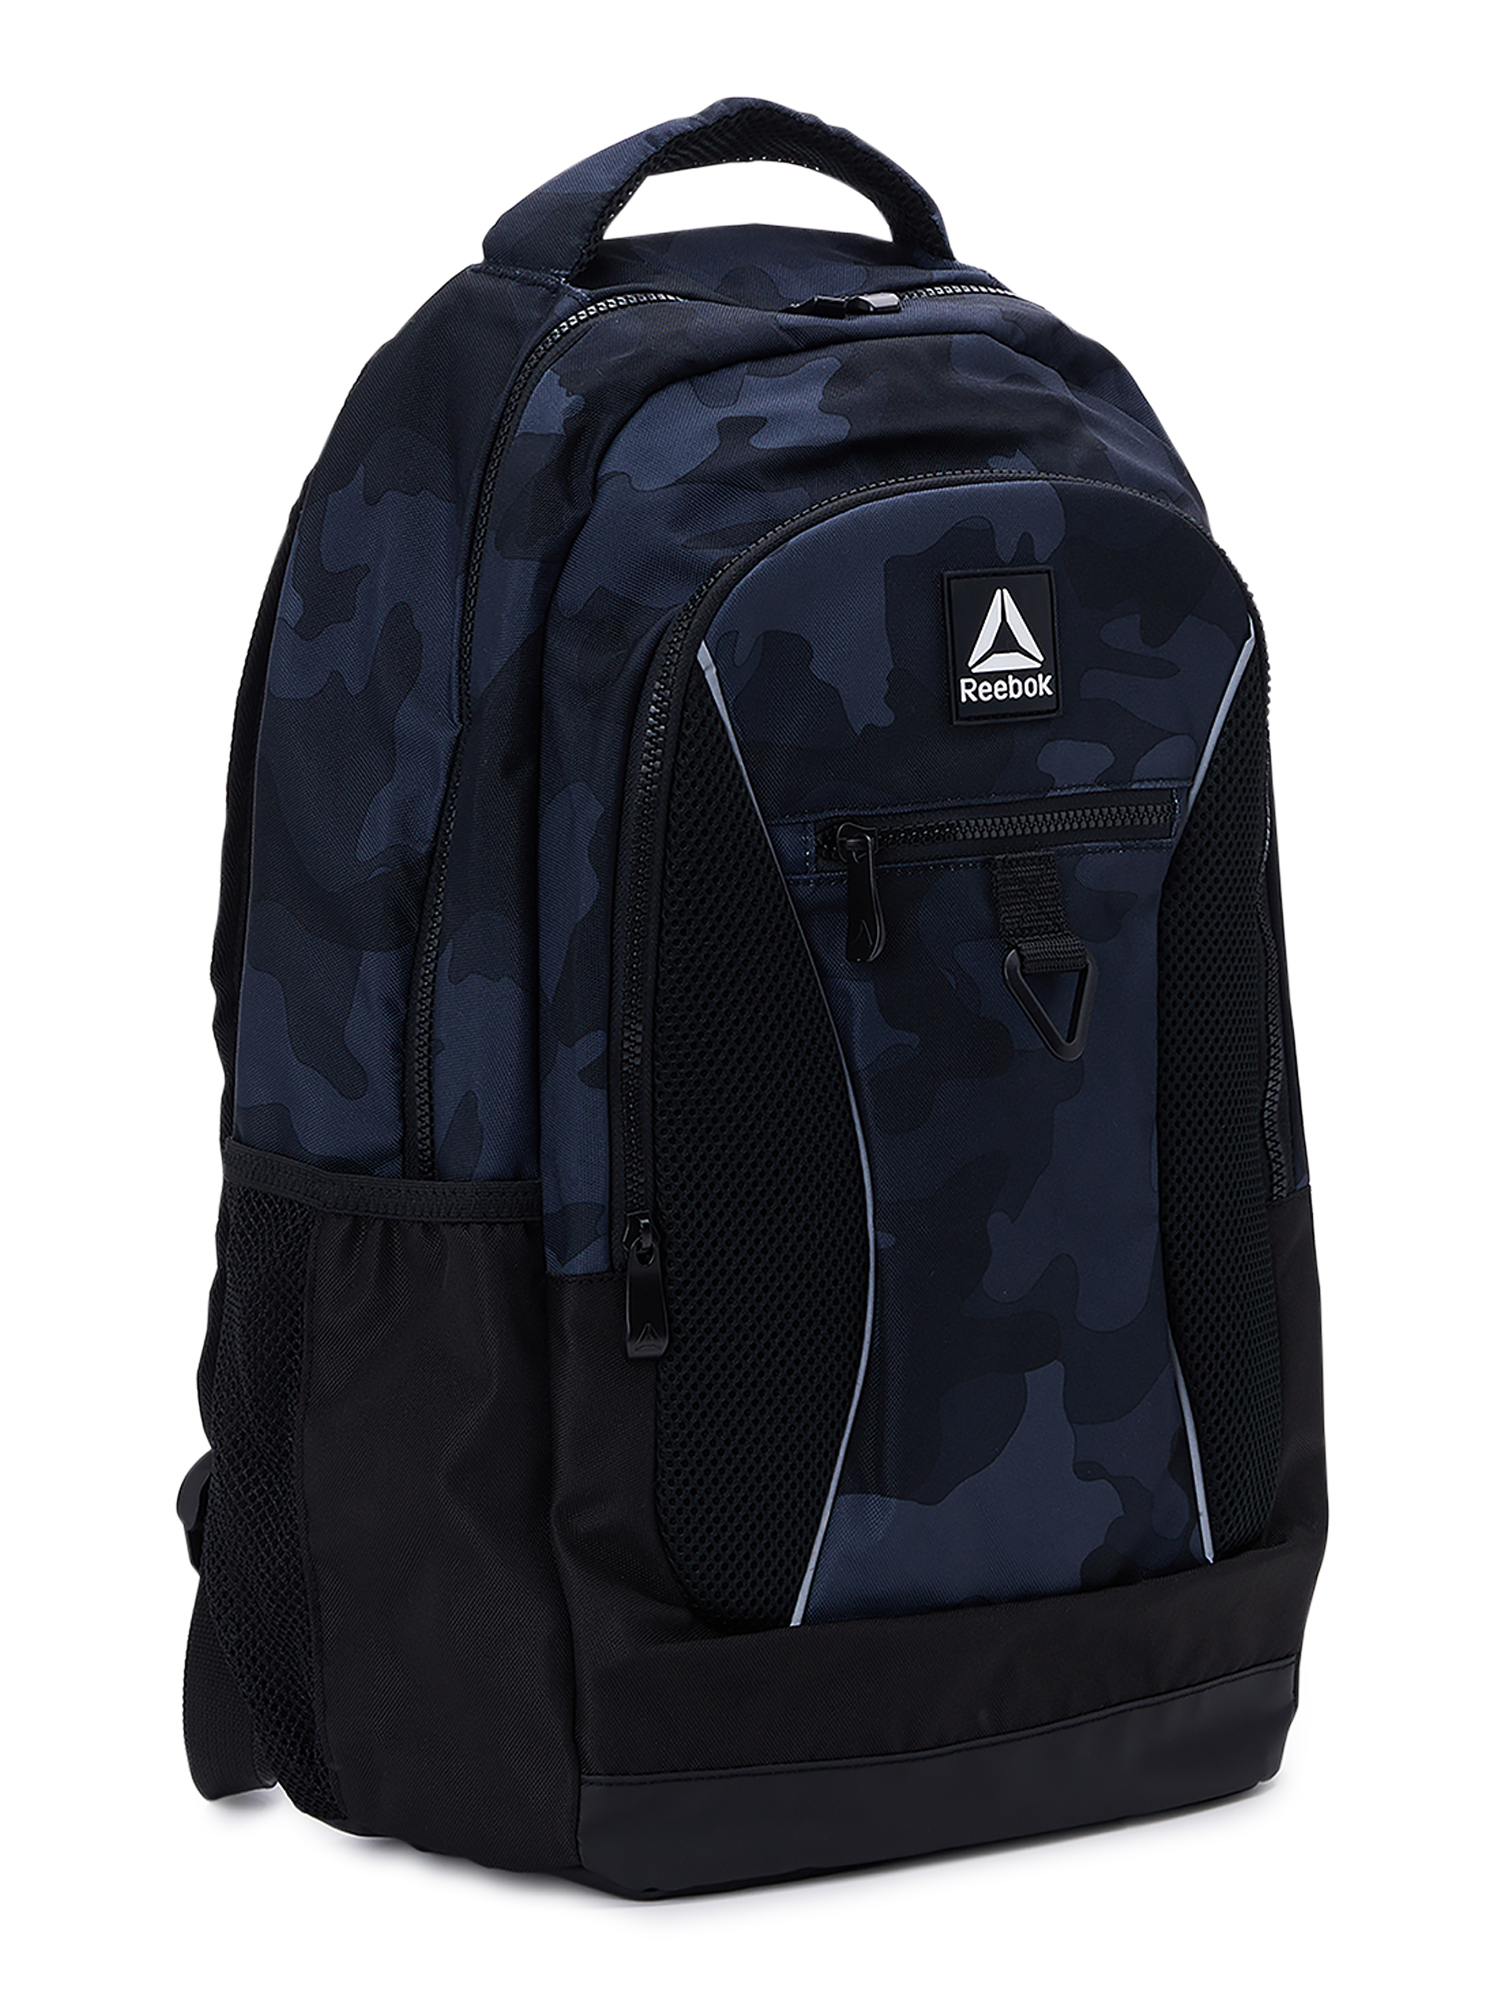 Reebok Unisex Adult Laredo 19.5" Laptop Backpack, Black Camo - image 1 of 5